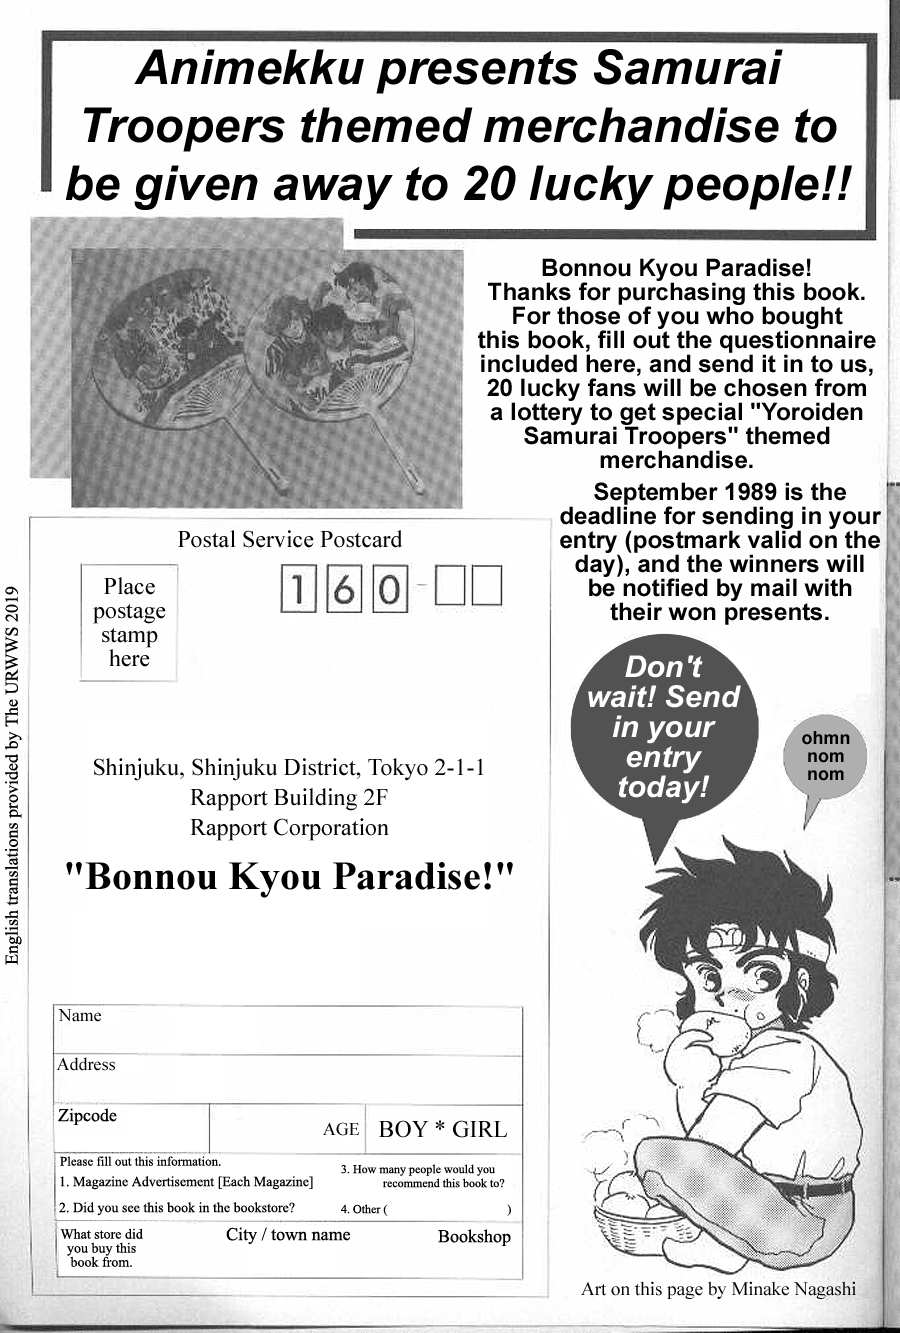 Bonnou Kyou Paradise! - Page 2 14810